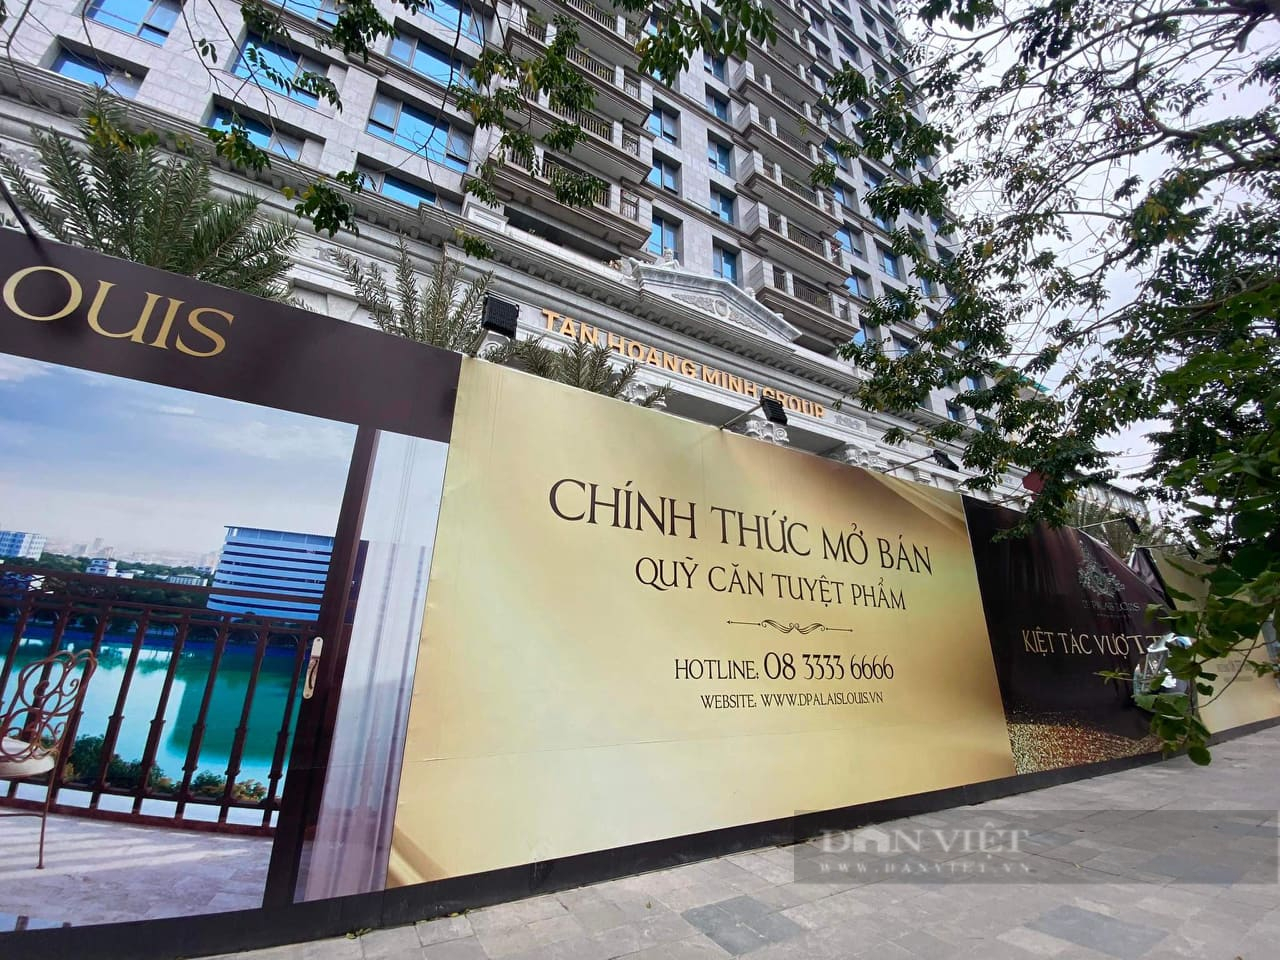 Cận cảnh 11 dự án bất động sản trên 'đất vàng' của Tân Hoàng Minh đang bị điều tra - Ảnh 3.